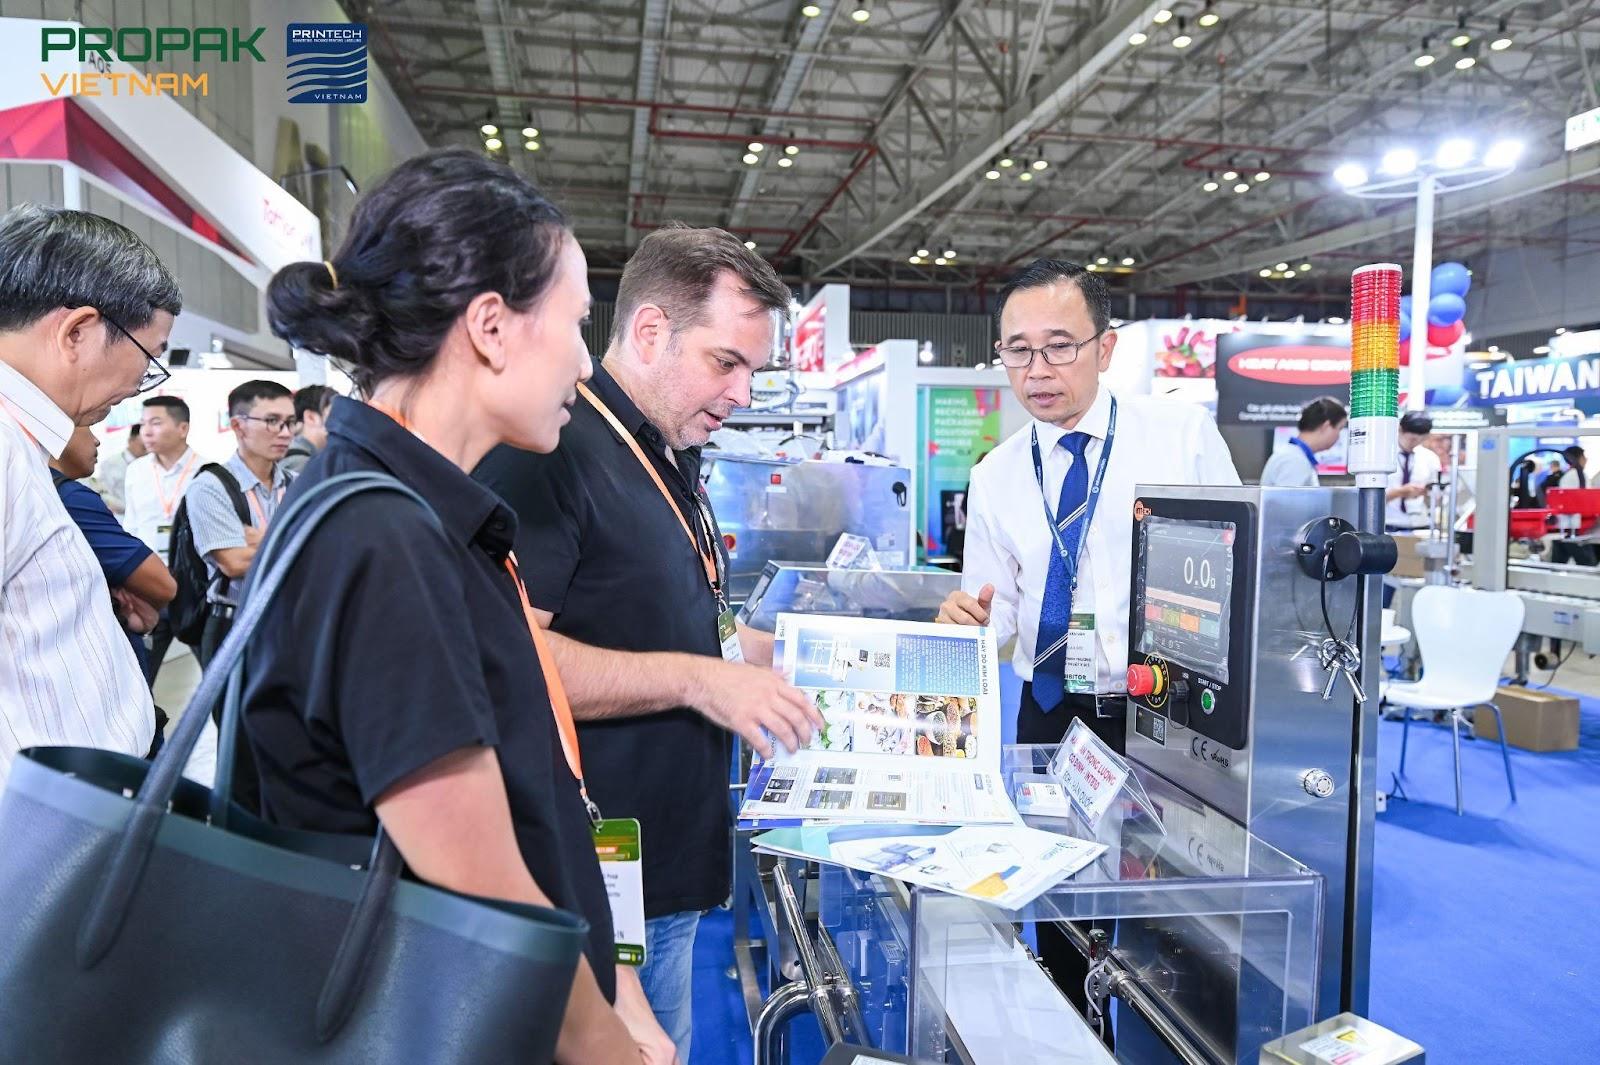 Triển lãm ProPak Vietnam mở ra cơ hội kinh doanh mới trong và ngoài nước